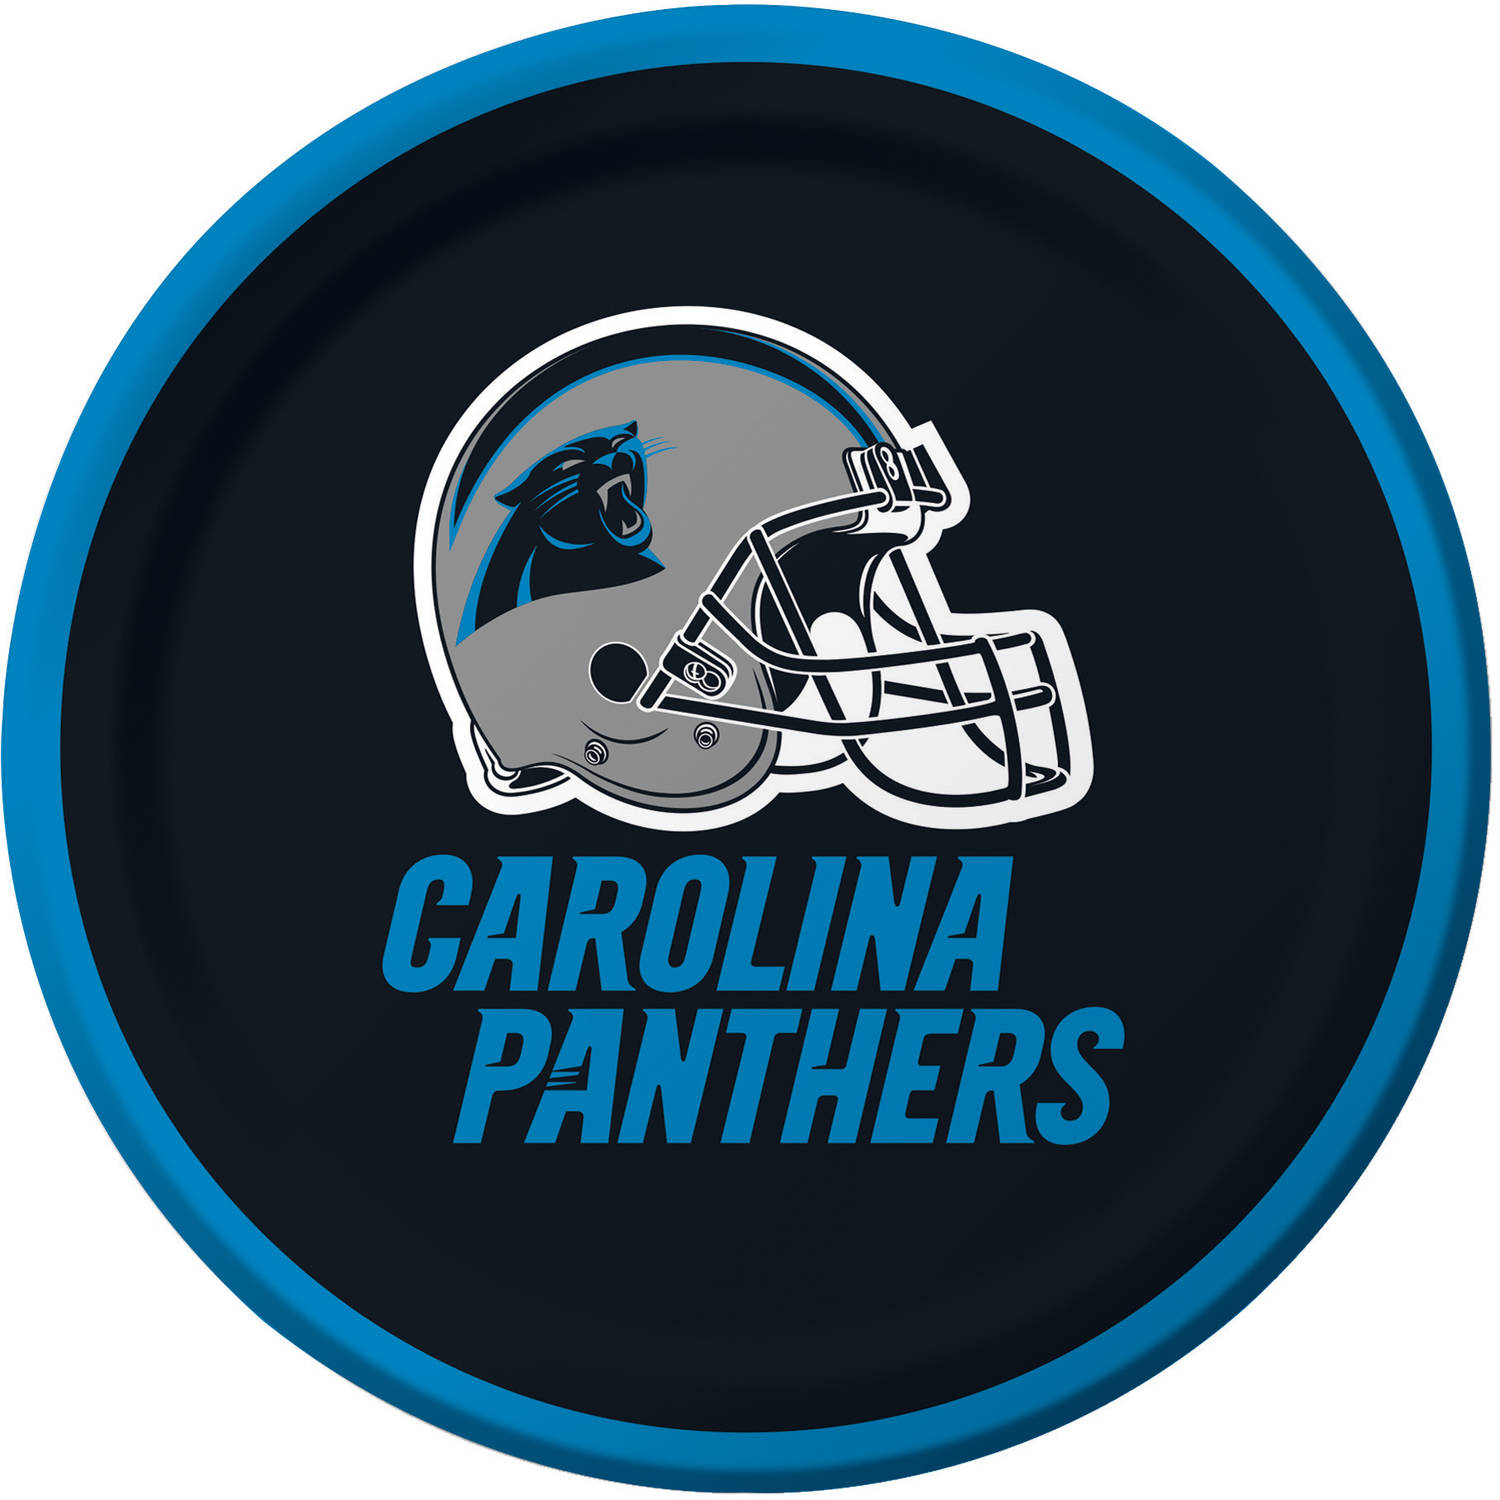 Carolina Panthers Hd Wallpapers, Desktop Wallpaper - Nfl Carolina Panthers - HD Wallpaper 